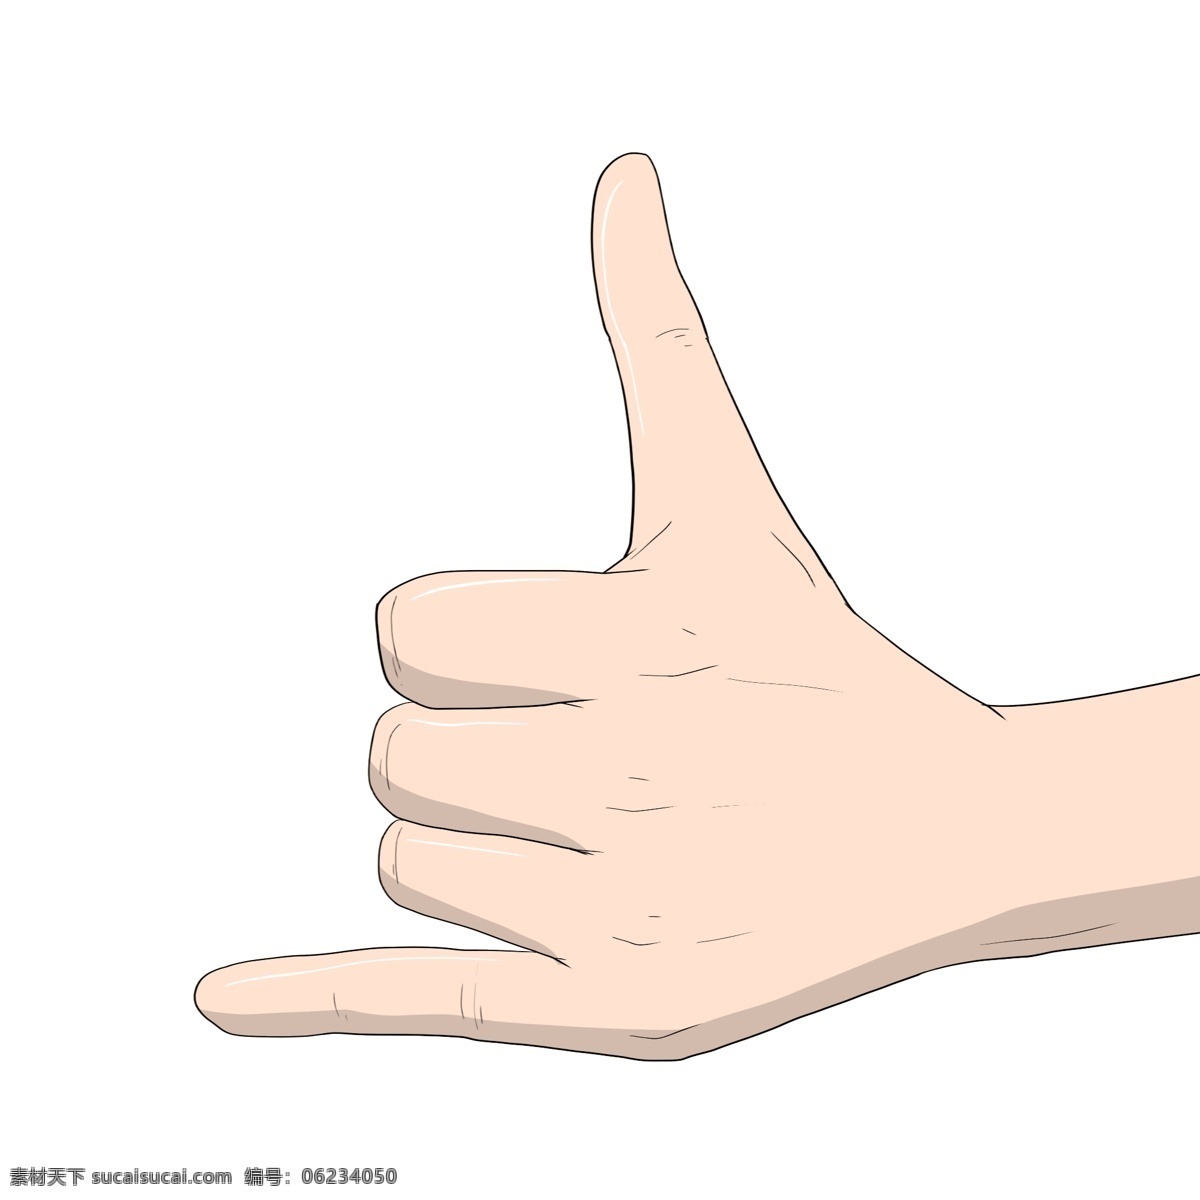 手绘 数字 手势 插画 美丽的手势 卡通插画 手绘手势插画 创意的手势 数字6的手势 漂亮的手势